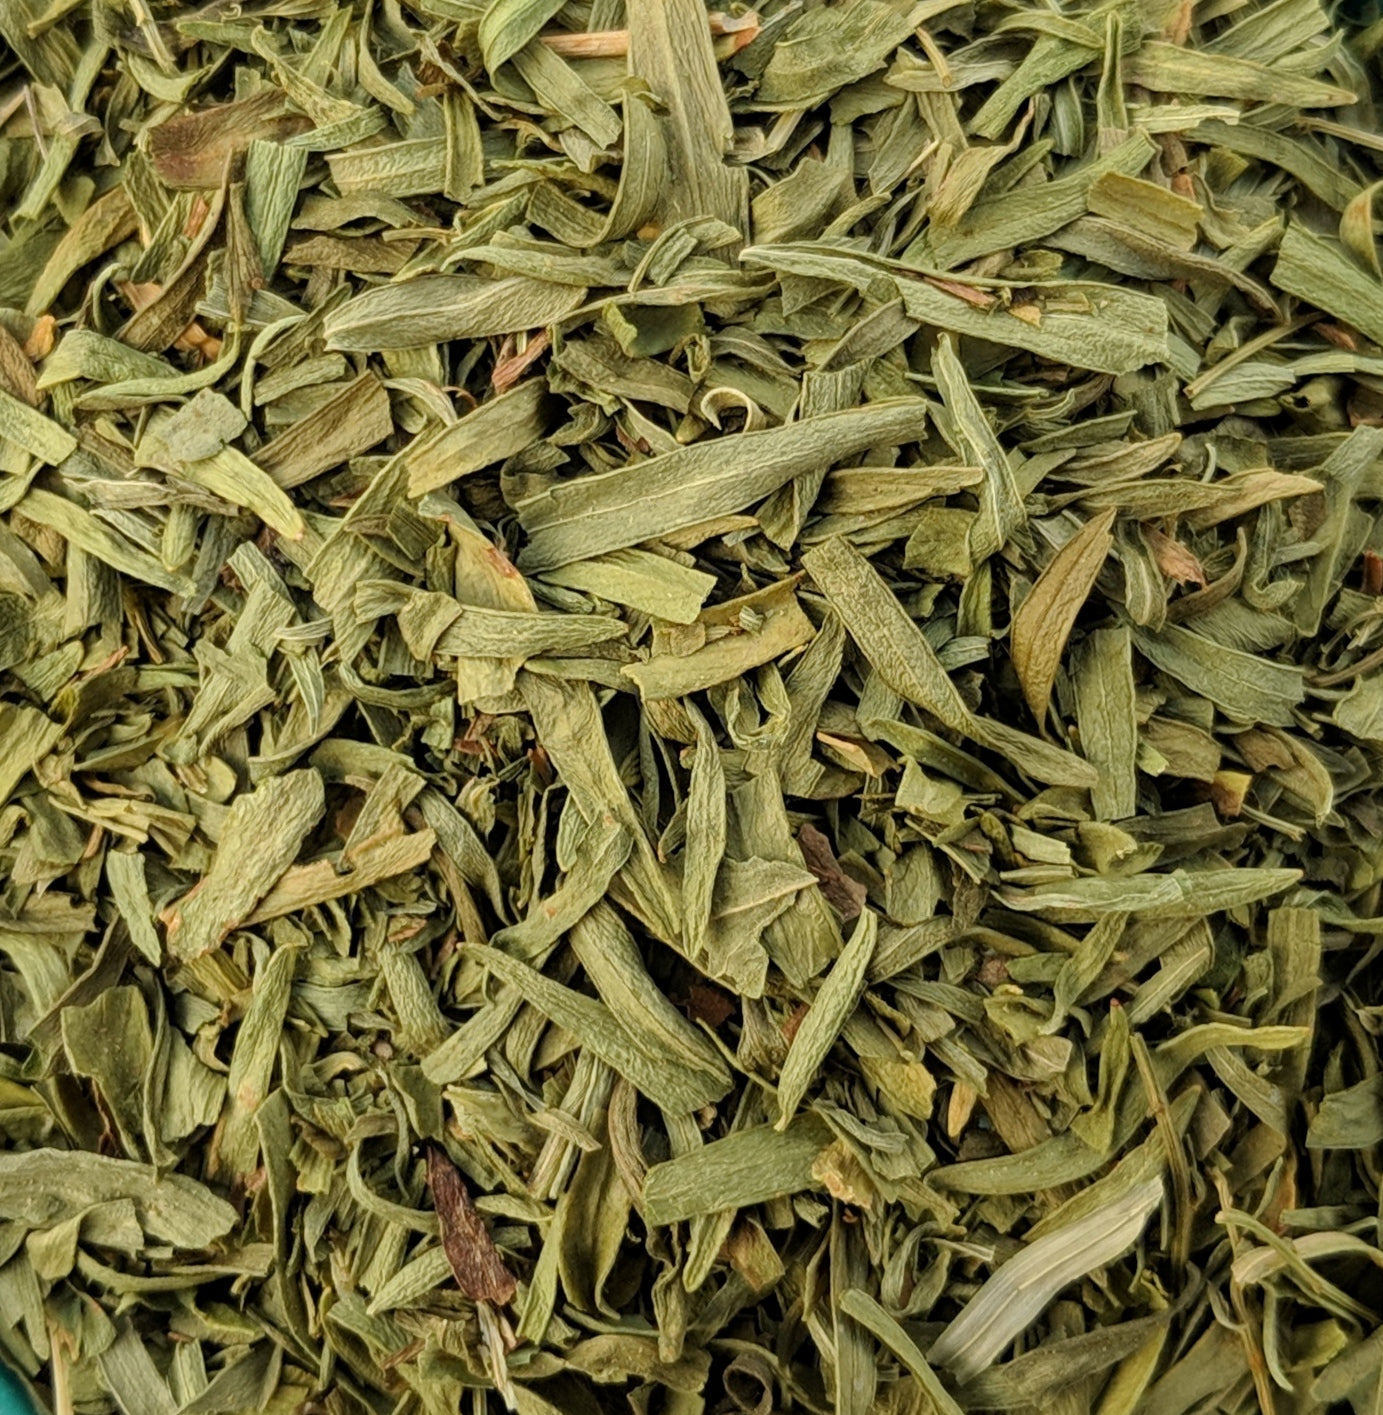 Estragon (Artemisia Dracunculus)